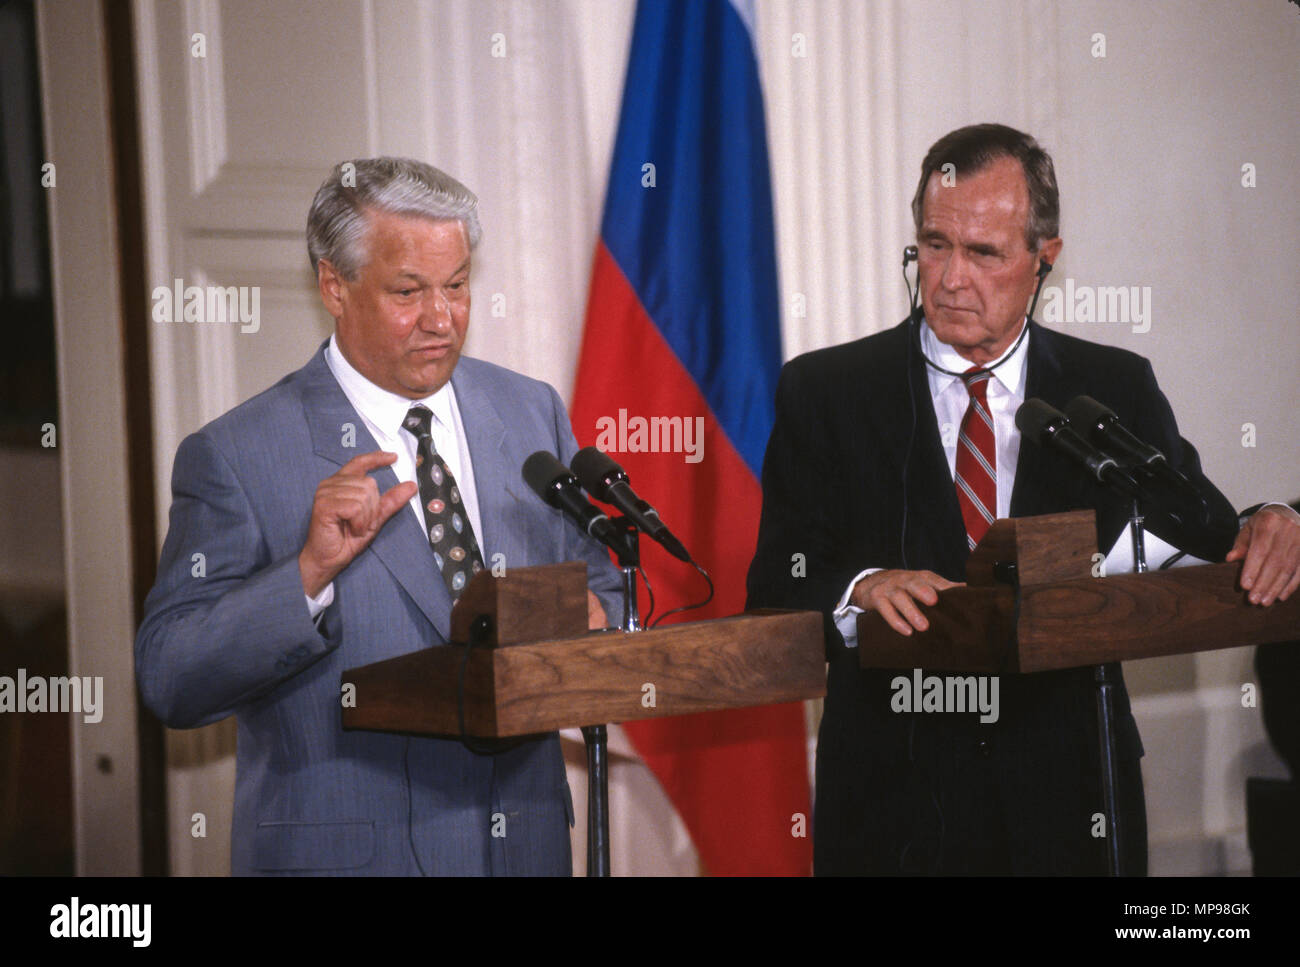 WASHINGTON, DC, Estados Unidos - 17 de junio de 1992 Rusia: el Presidente Boris Yeltin, izquierda, hablando en conferencia de prensa en el Salón Este de la Casa Blanca, durante la cumbre con el Presidente George H.W. Bush. Foto de stock